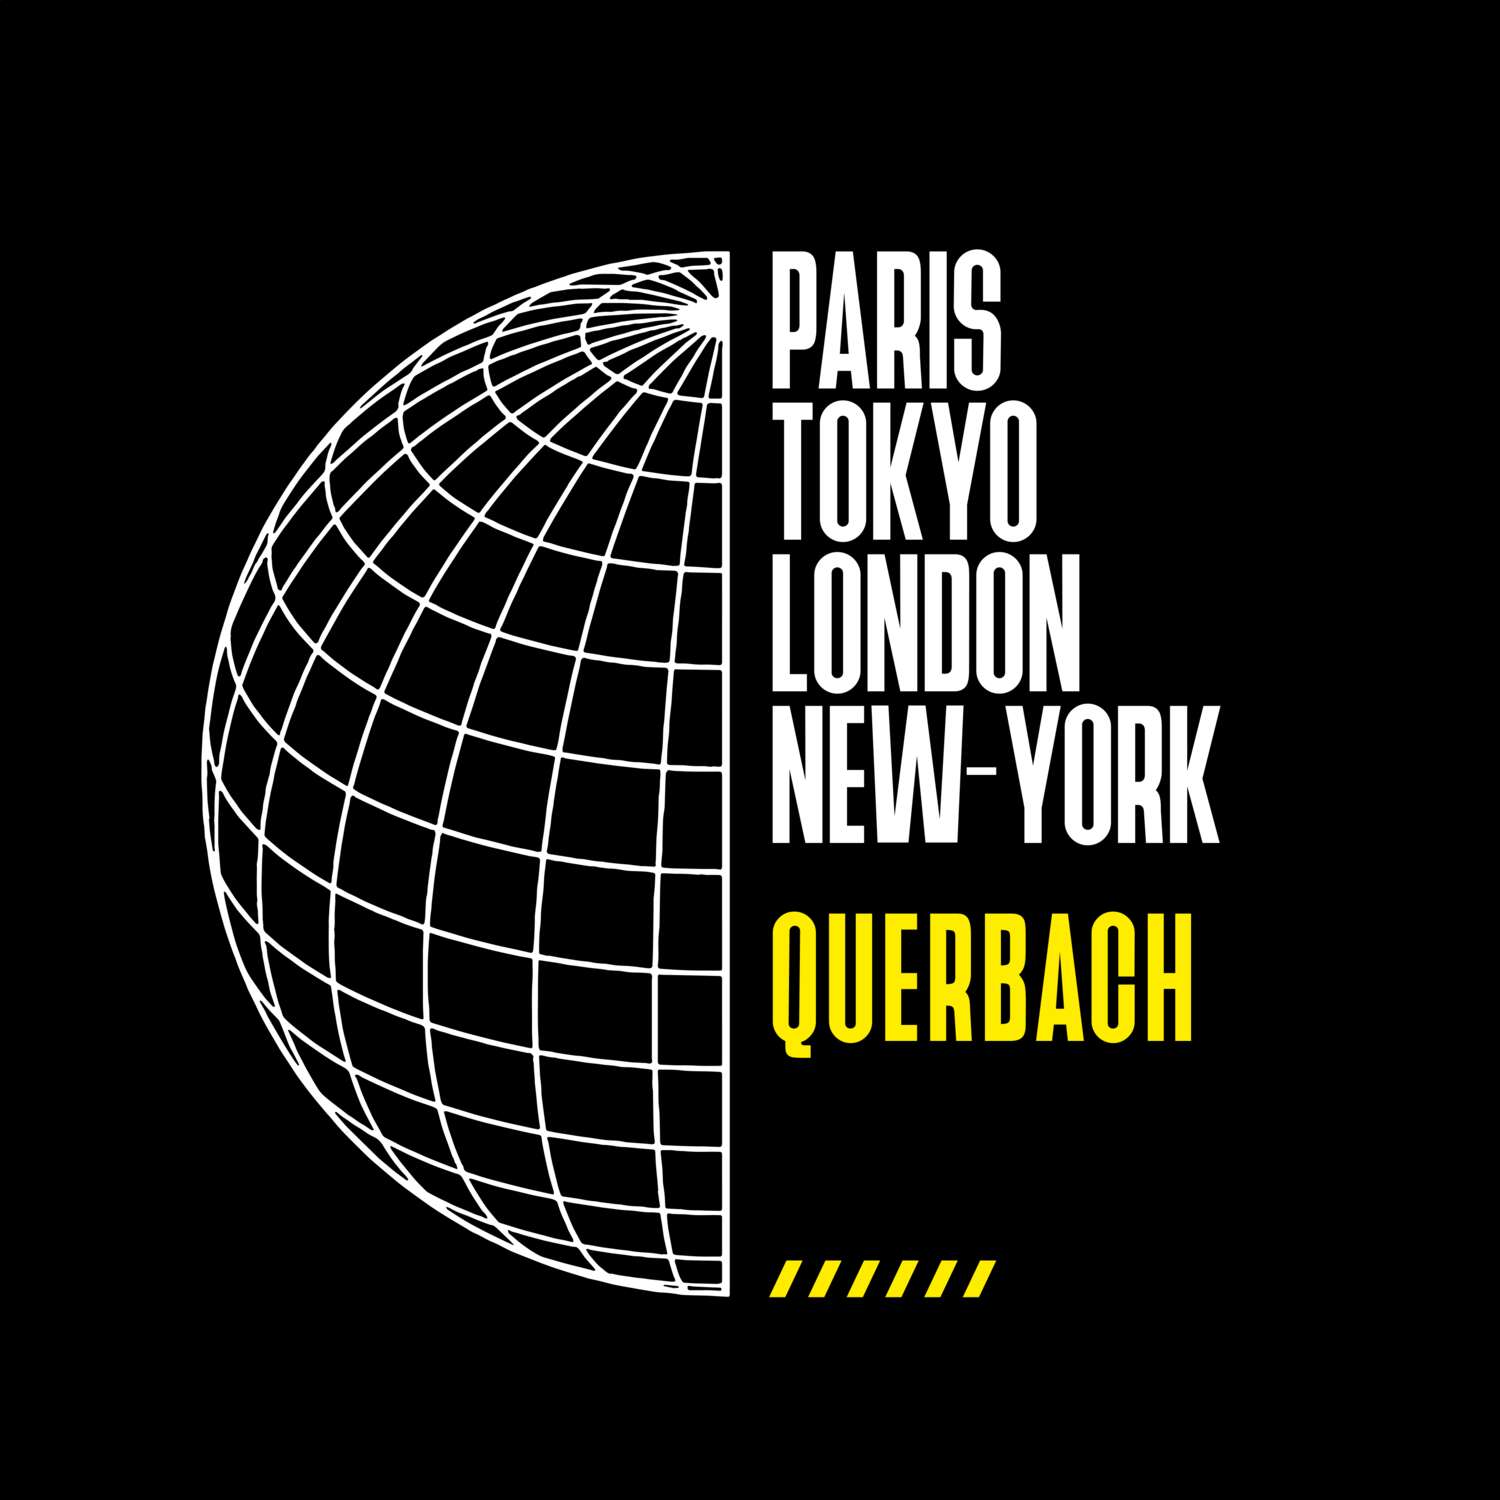 Querbach T-Shirt »Paris Tokyo London«